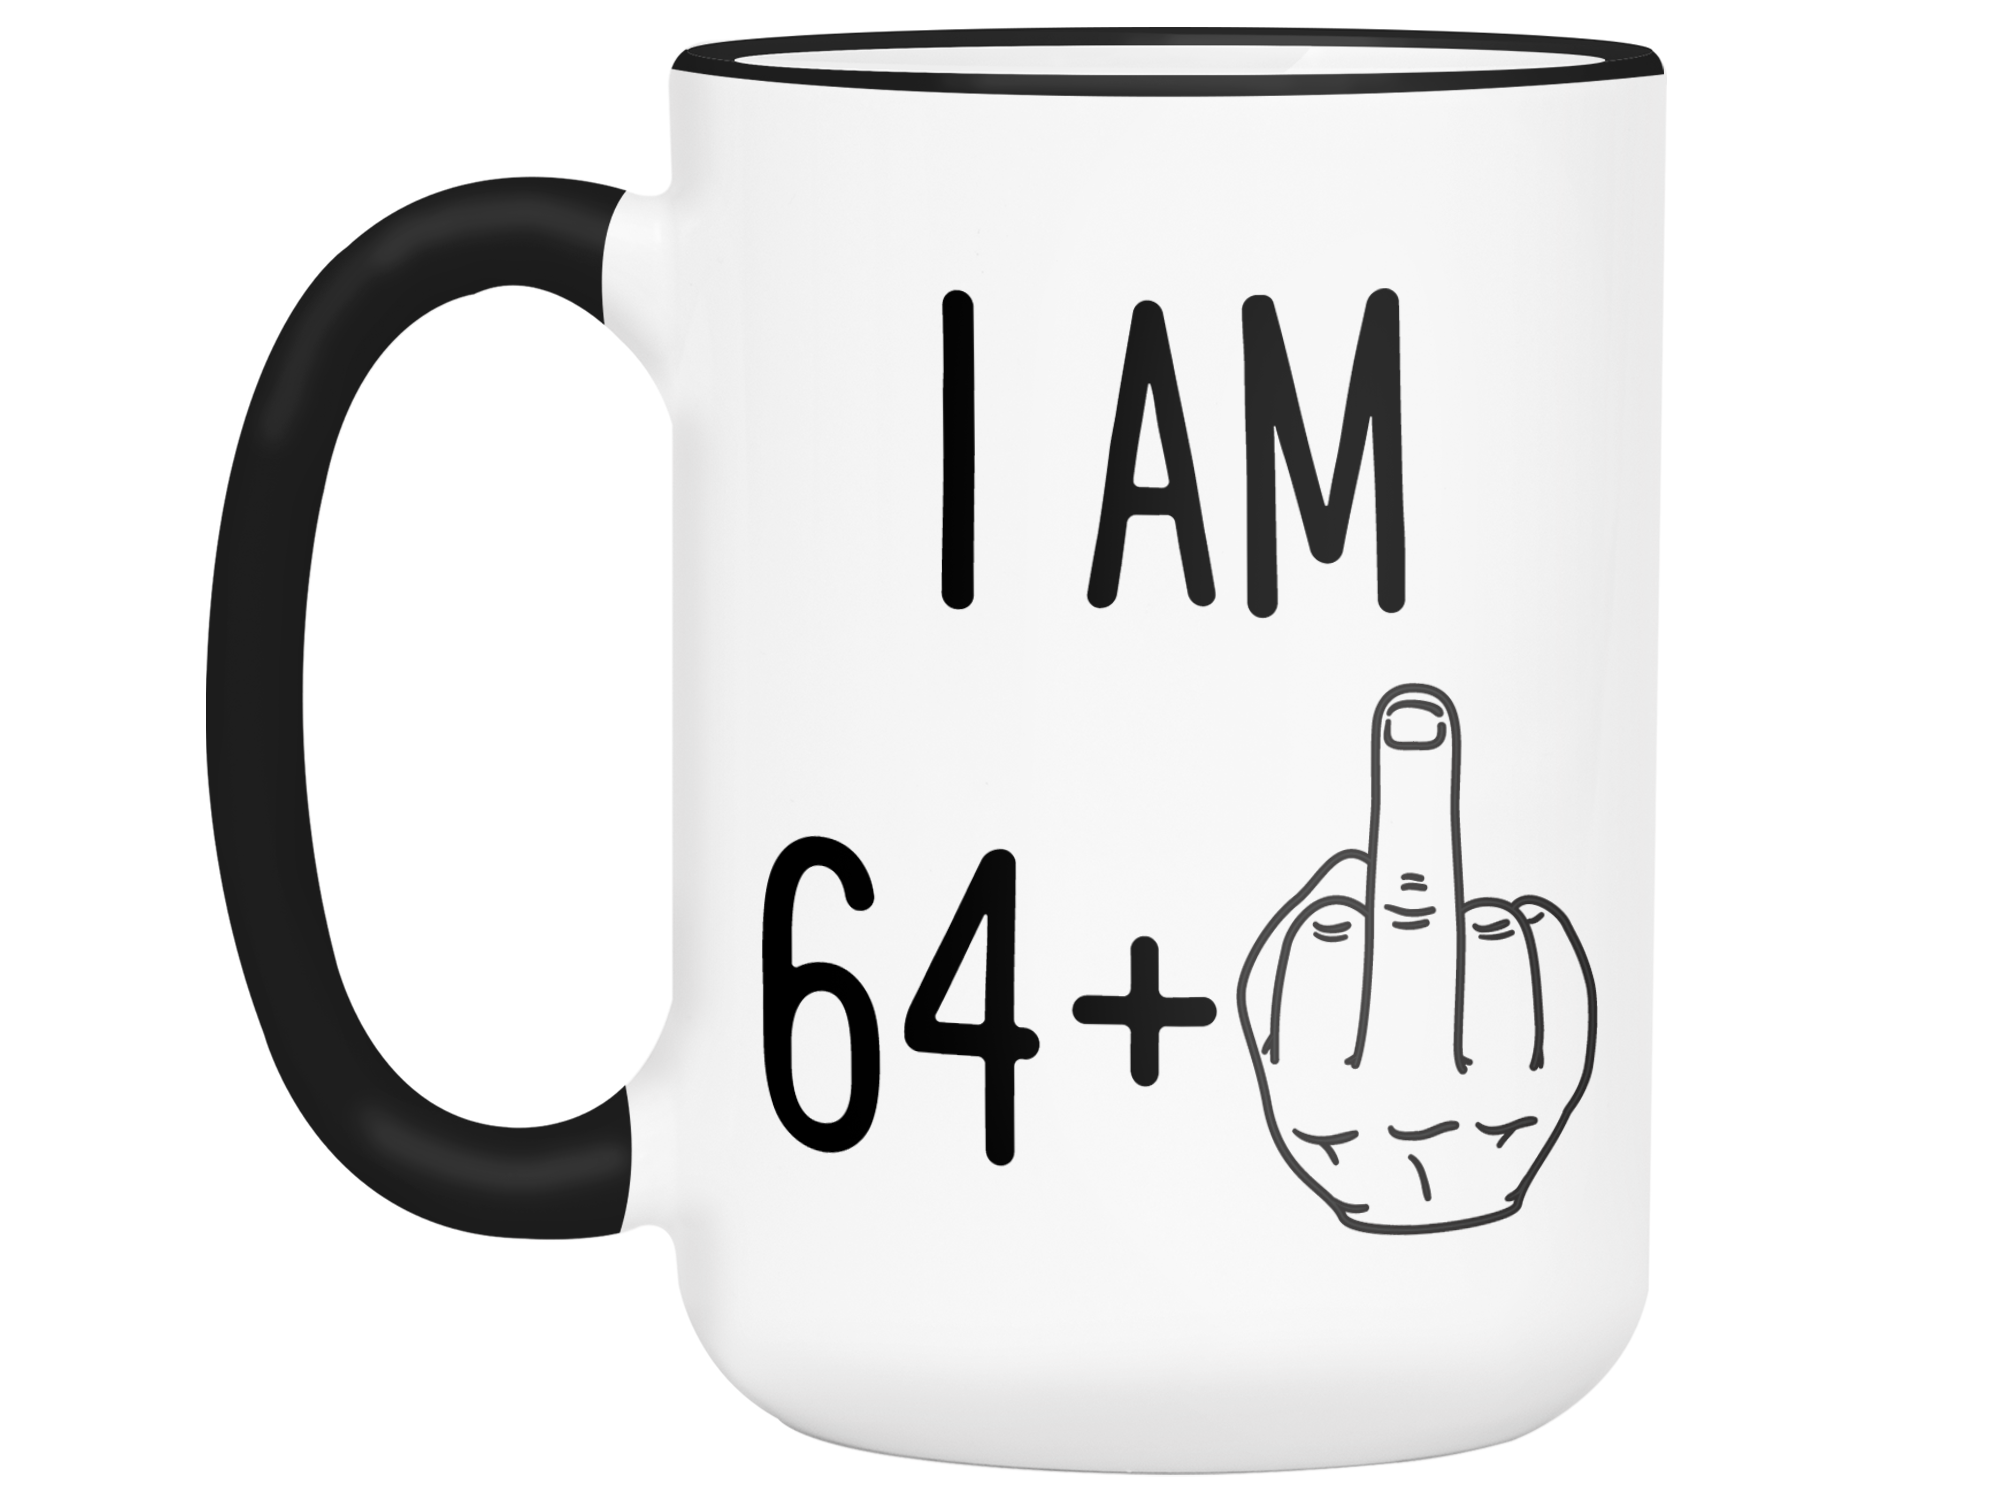 65th Birthday Gifts - I Am 64 + Middle Finger Funny Coffee Mug - Gag G -  RANSALEX